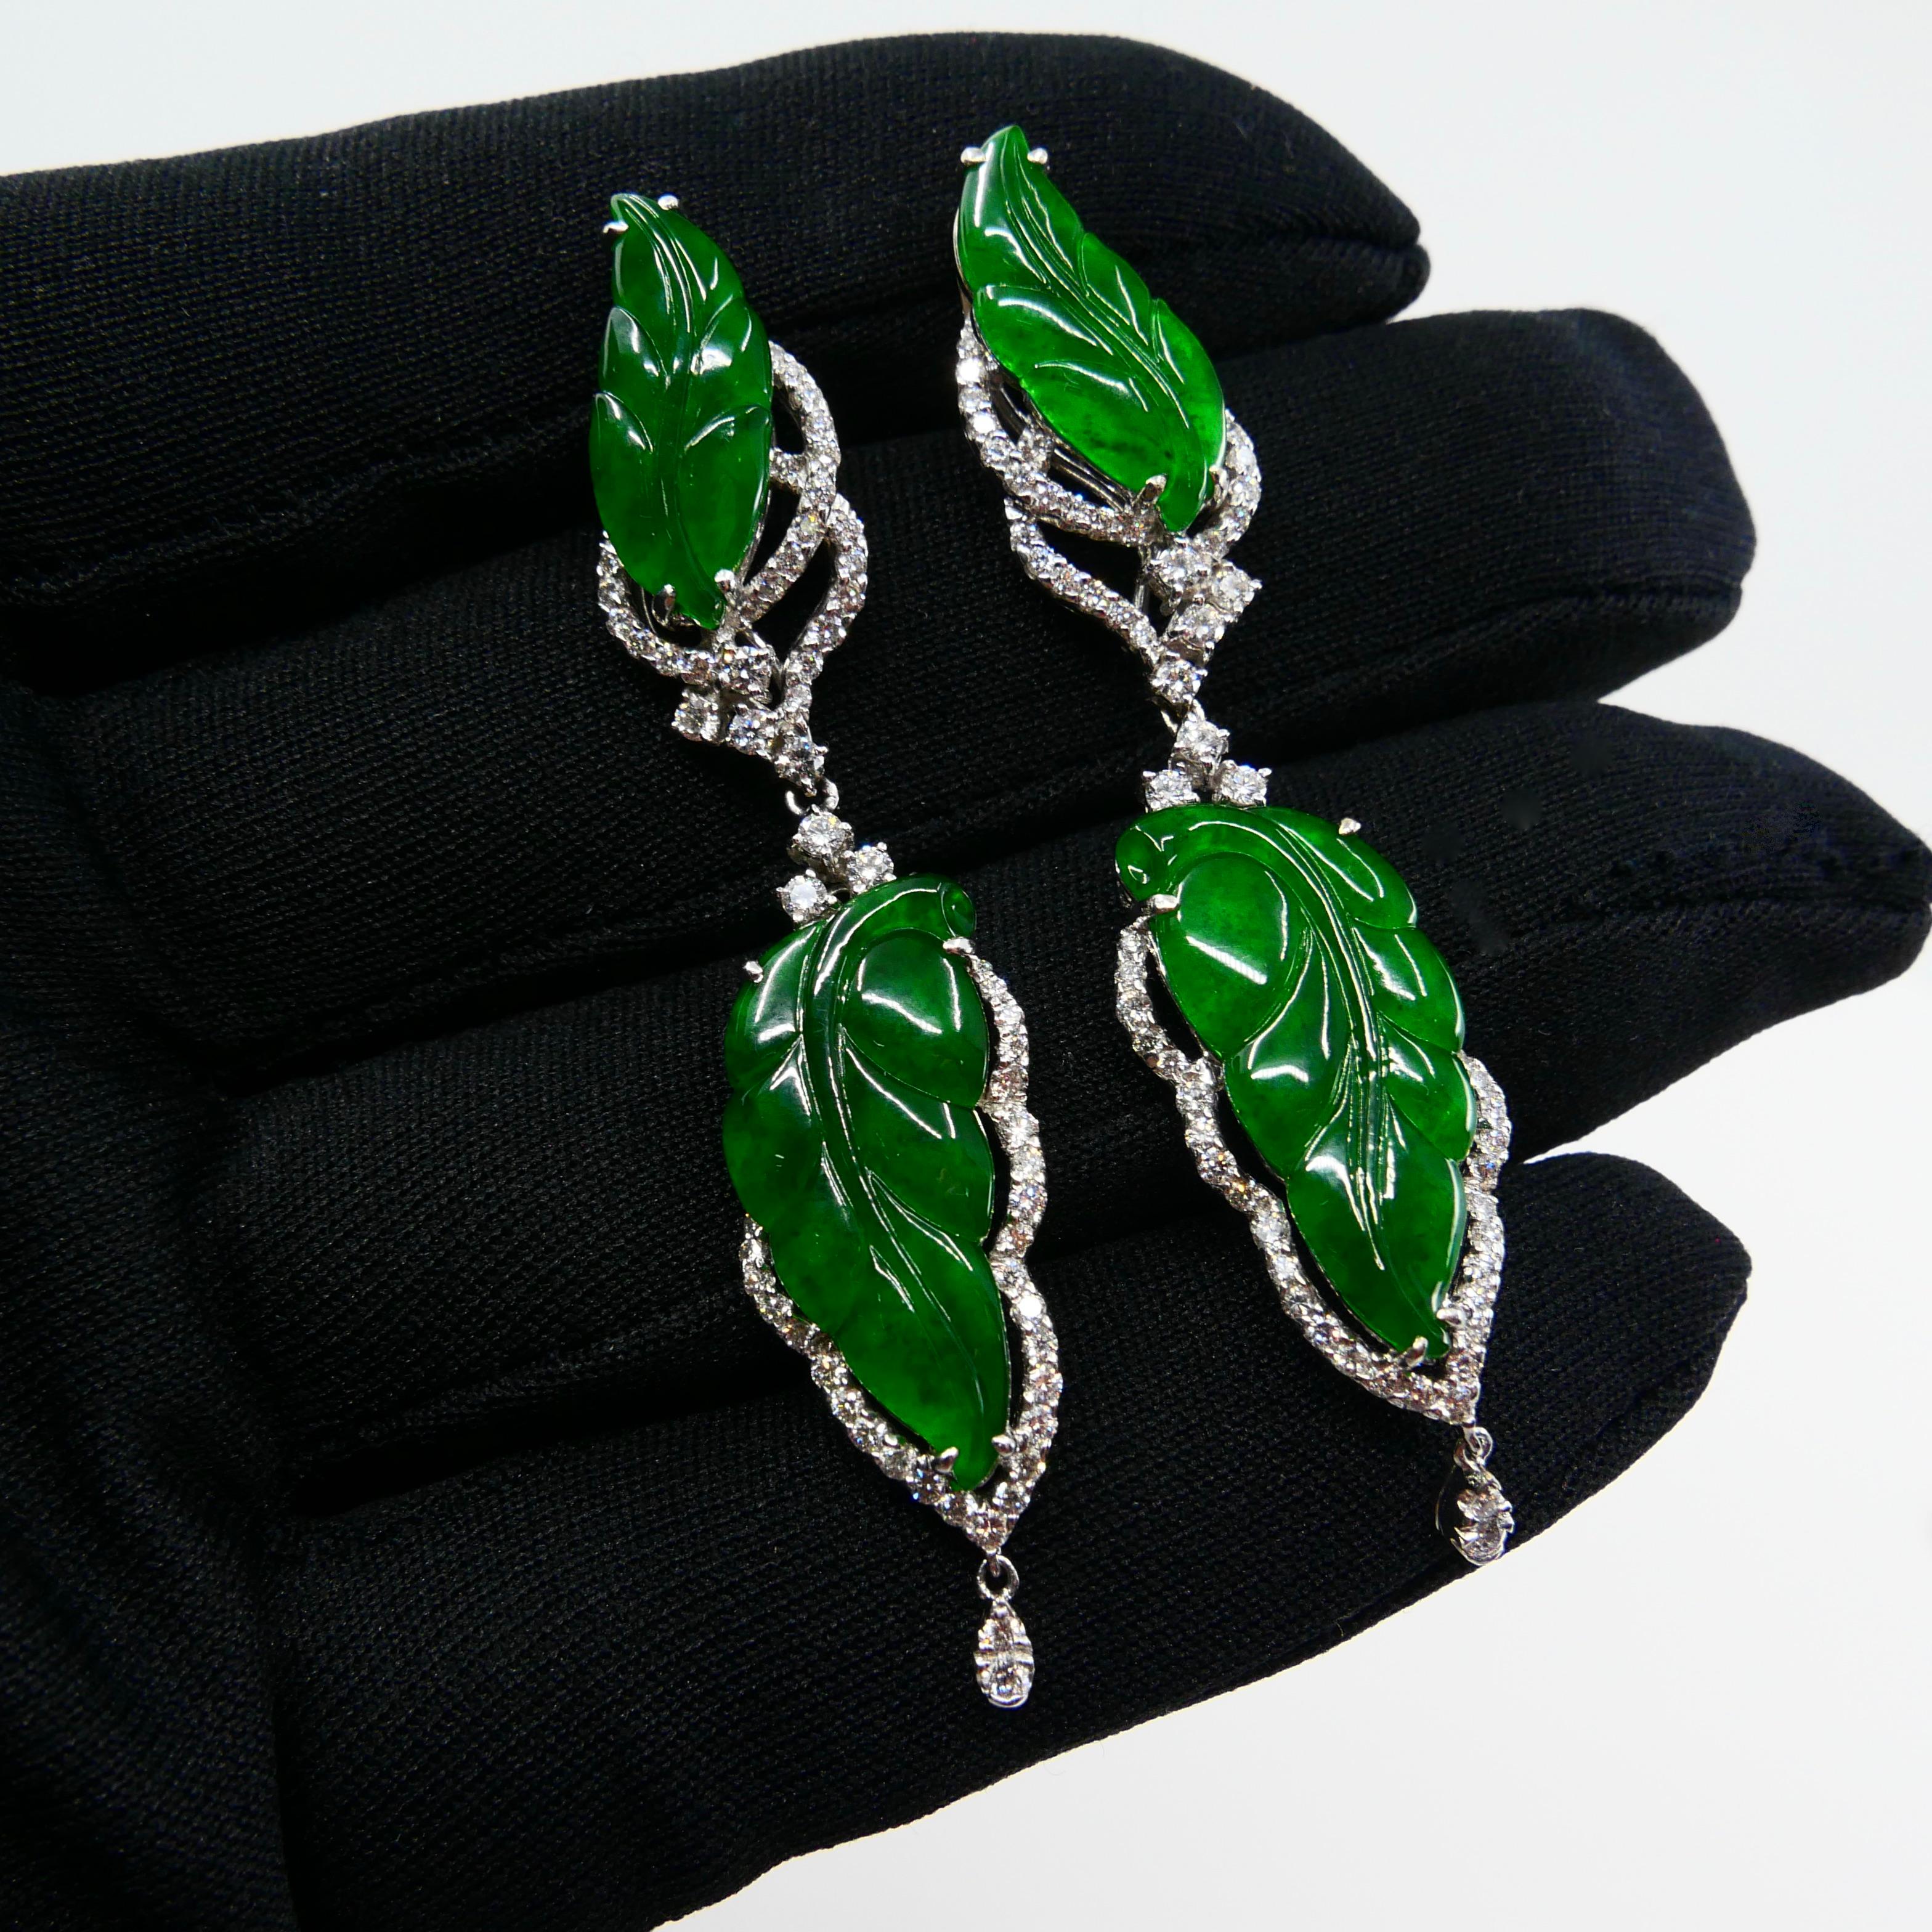 Vintage Certified Jadeite Jade and Diamond Drop Earrings, Intense Imperial Green 9